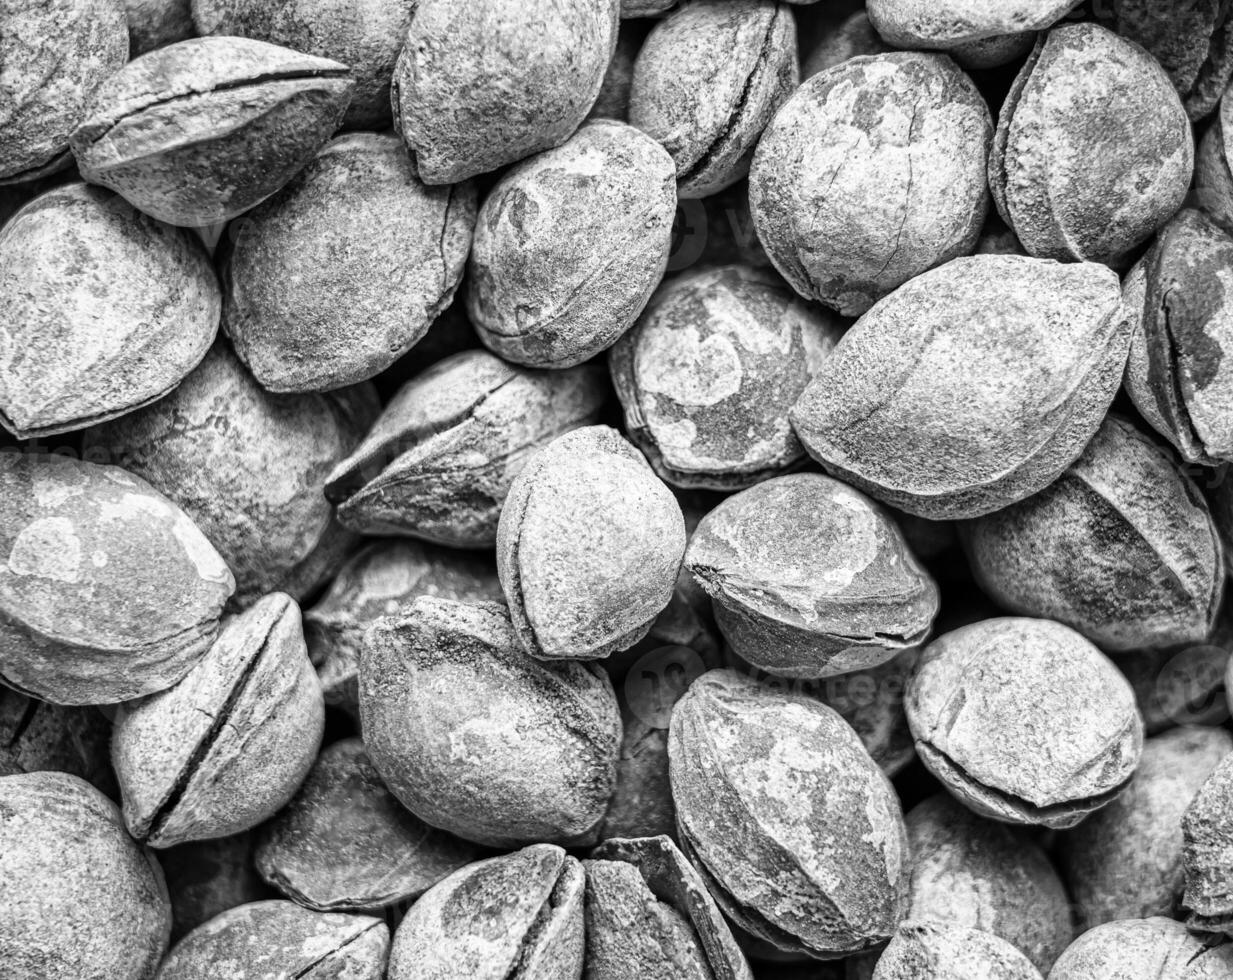 noir et blanc texture de une pile de abricot graines dans le coquille. Contexte de en bonne santé plante végétalien aliments. des noisettes. photo